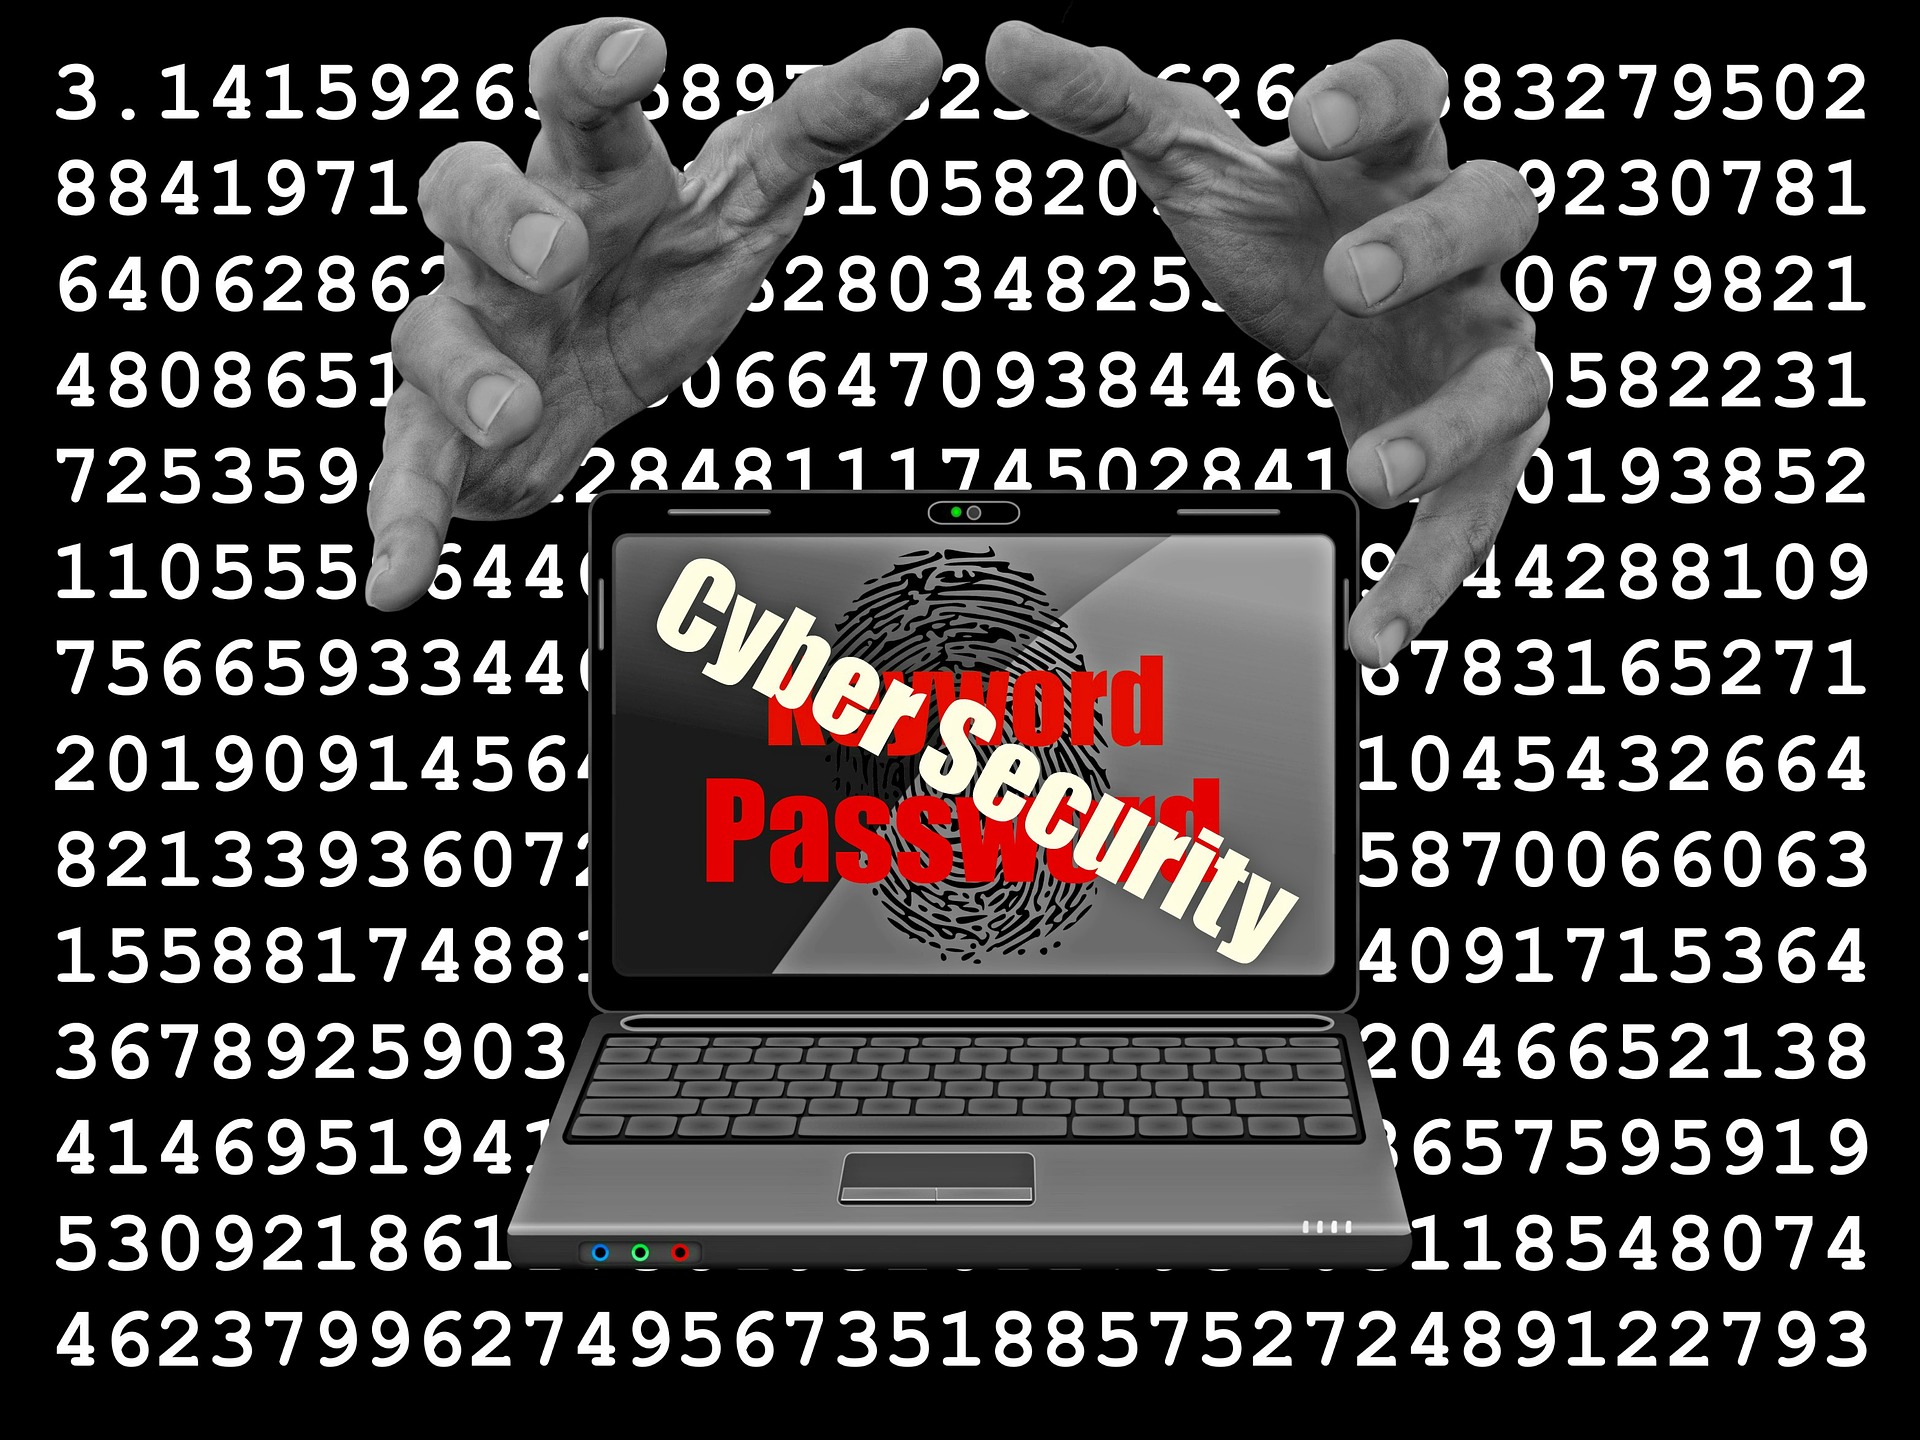 Der Welt-Passwort-Tag ruft jährlich dazu auf, sicherere Passwörter und zudem möglichst eine Zwei-Faktor-Authentifizierung zu benutzen.